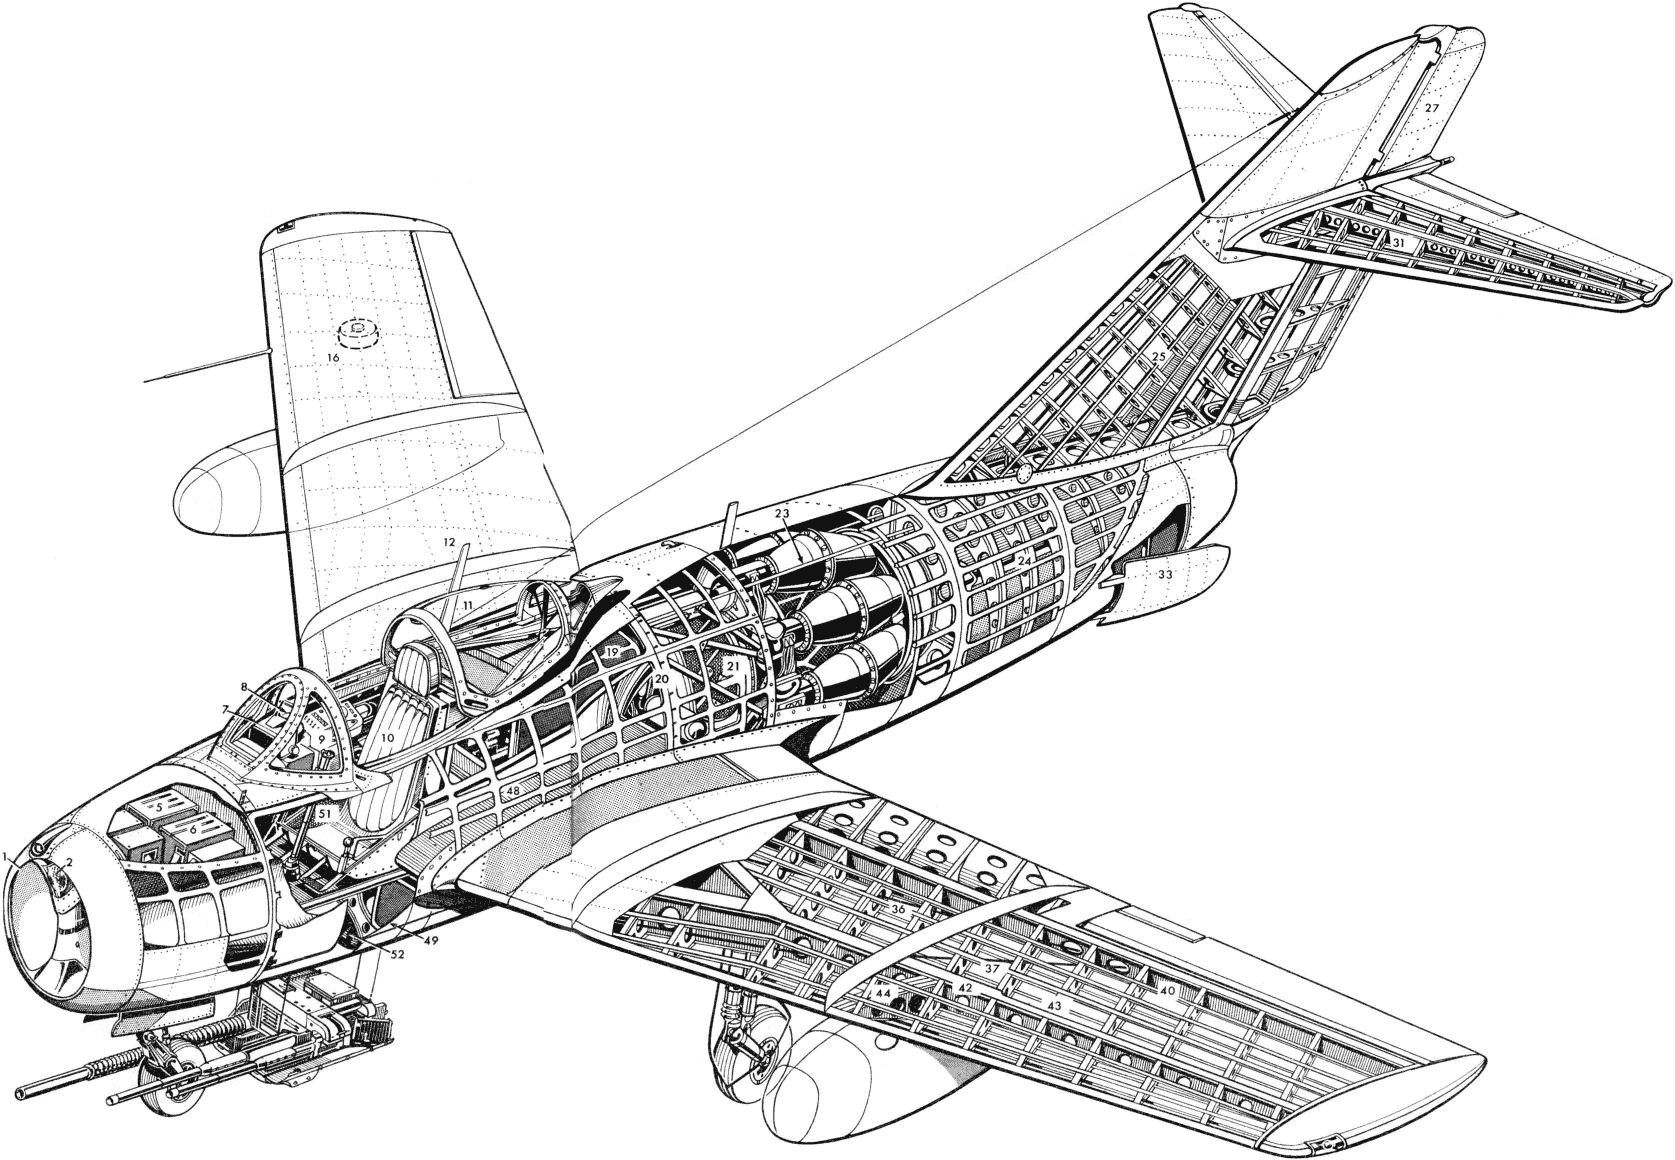 MiG-15 cutaway